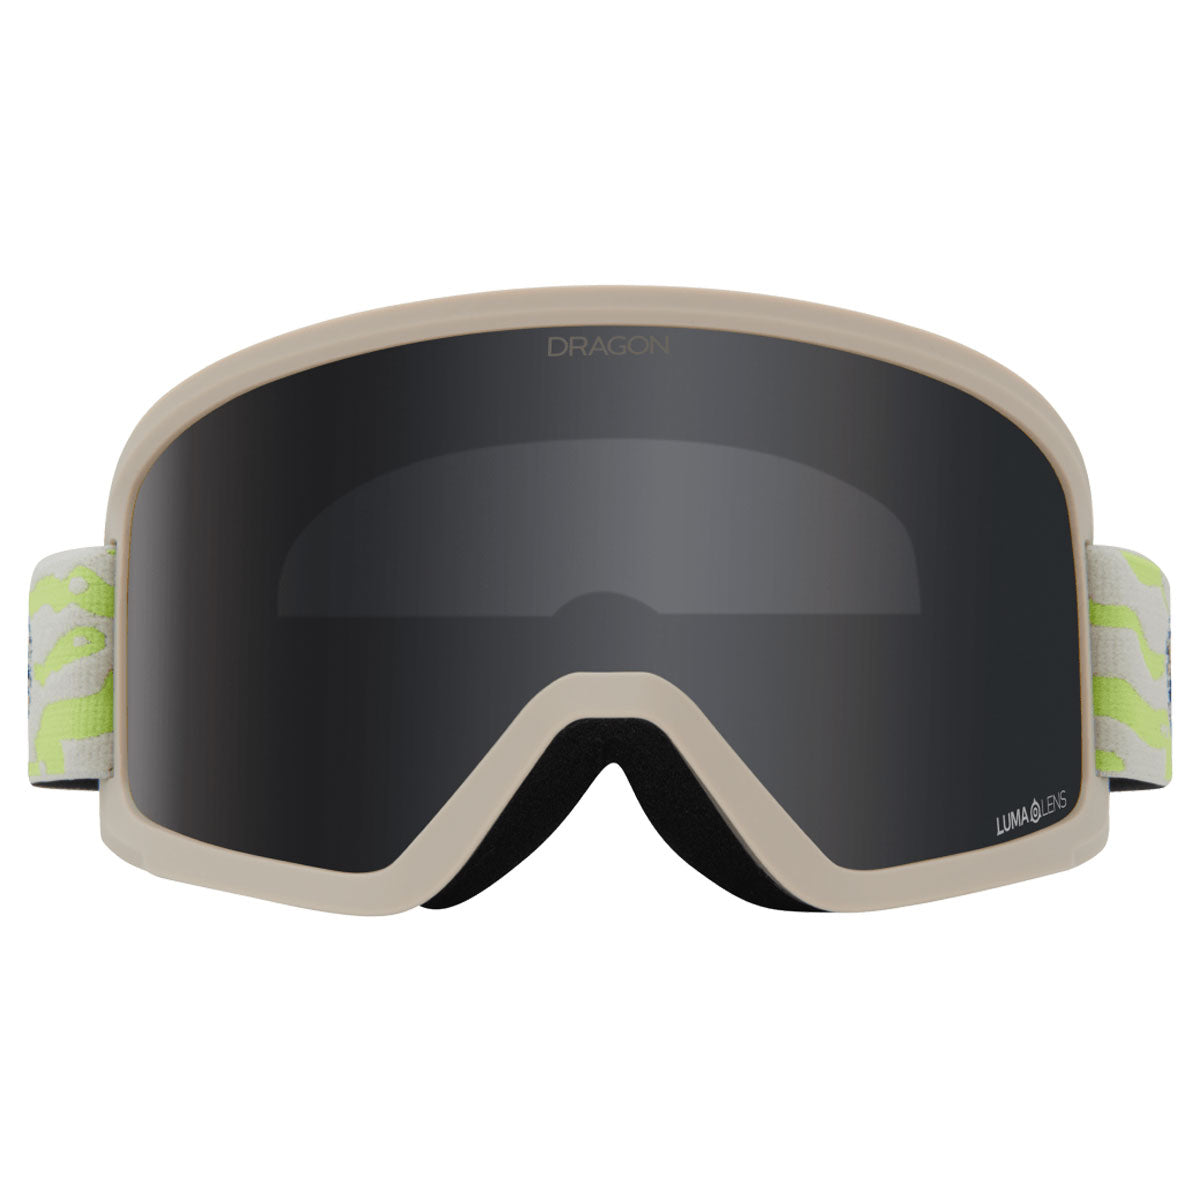 Dragon Eyewear DX3 OTG Snowboard Goggles - Kelp/Dark Smoke image 3